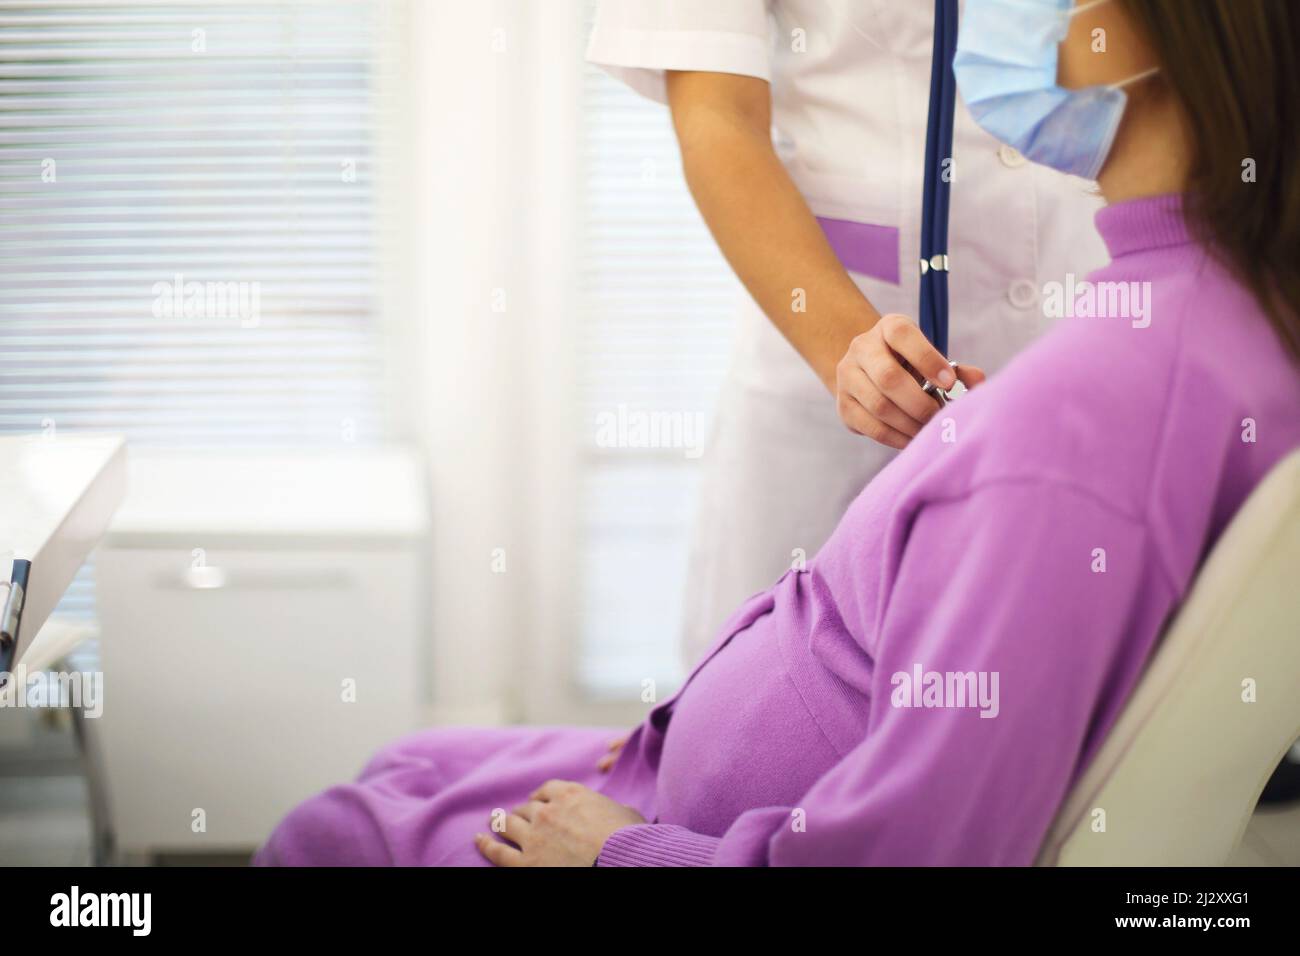 Médecin écoutant le rythme cardiaque de la femme enceinte avec stéthoscope lors d'un rendez-vous de soins prénatals à l'hôpital, dose de culture.Maladie cardiaque pendant la grossesse Banque D'Images